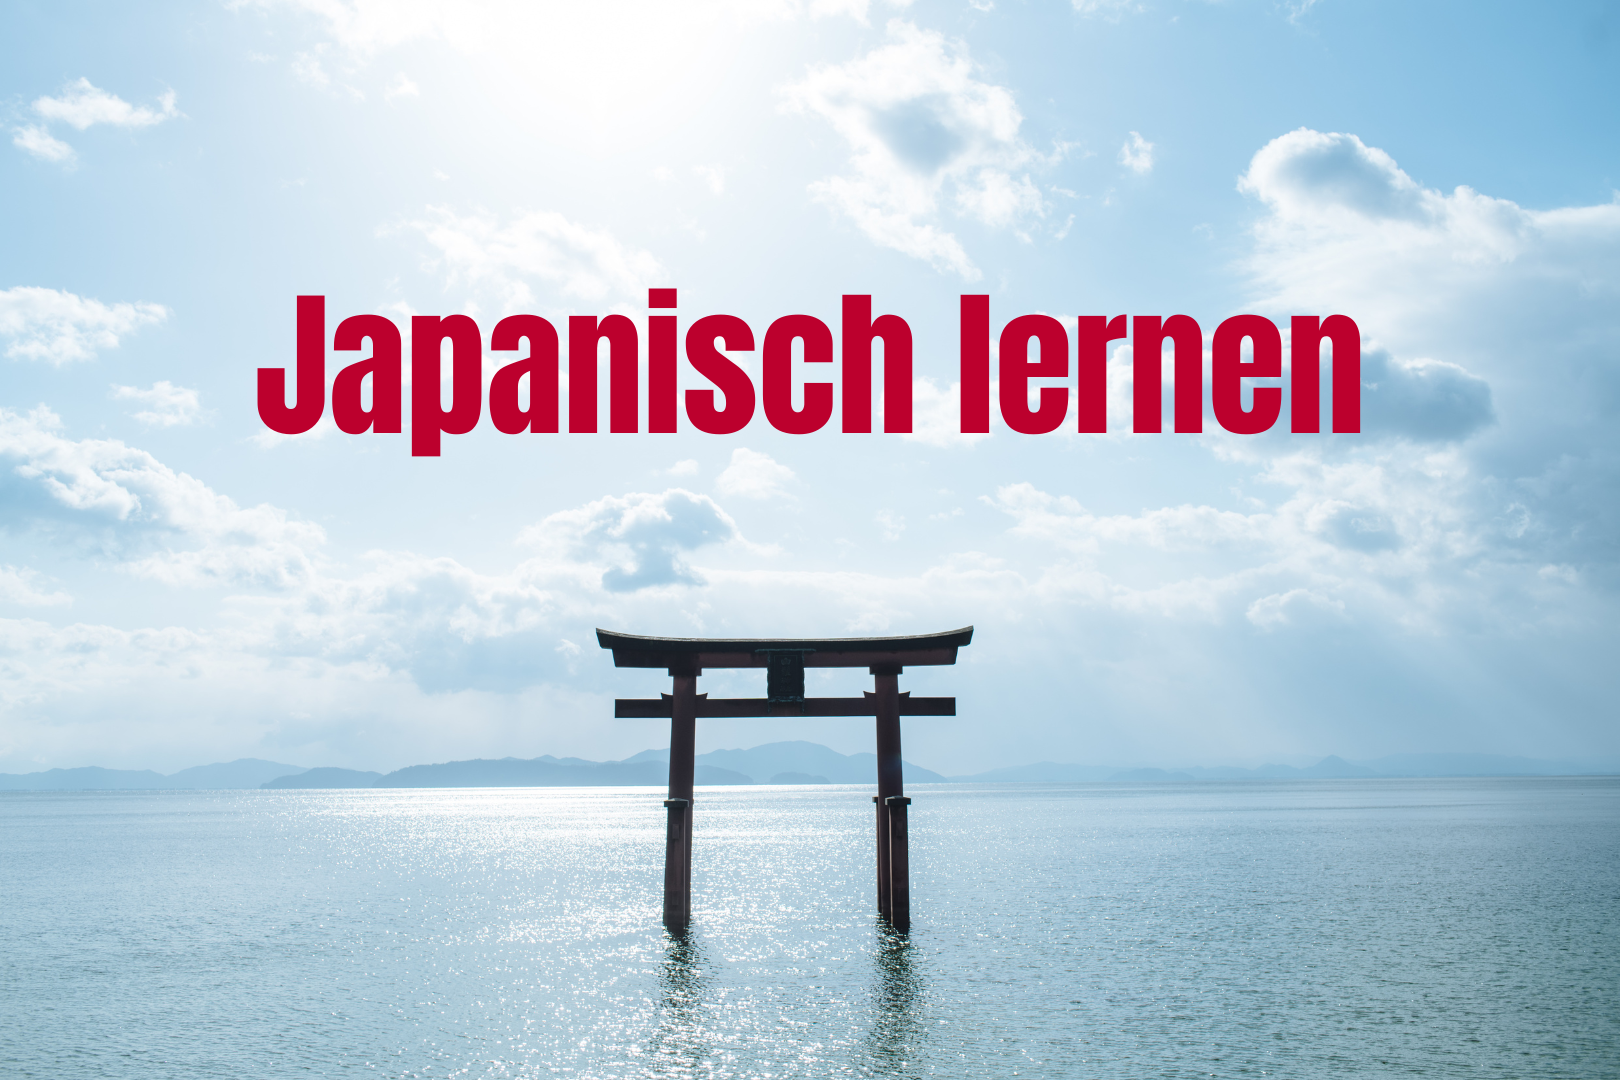 Ein japanischer Tempel (Torii) im Wasser. Darüber steht: "Japanisch lernen"